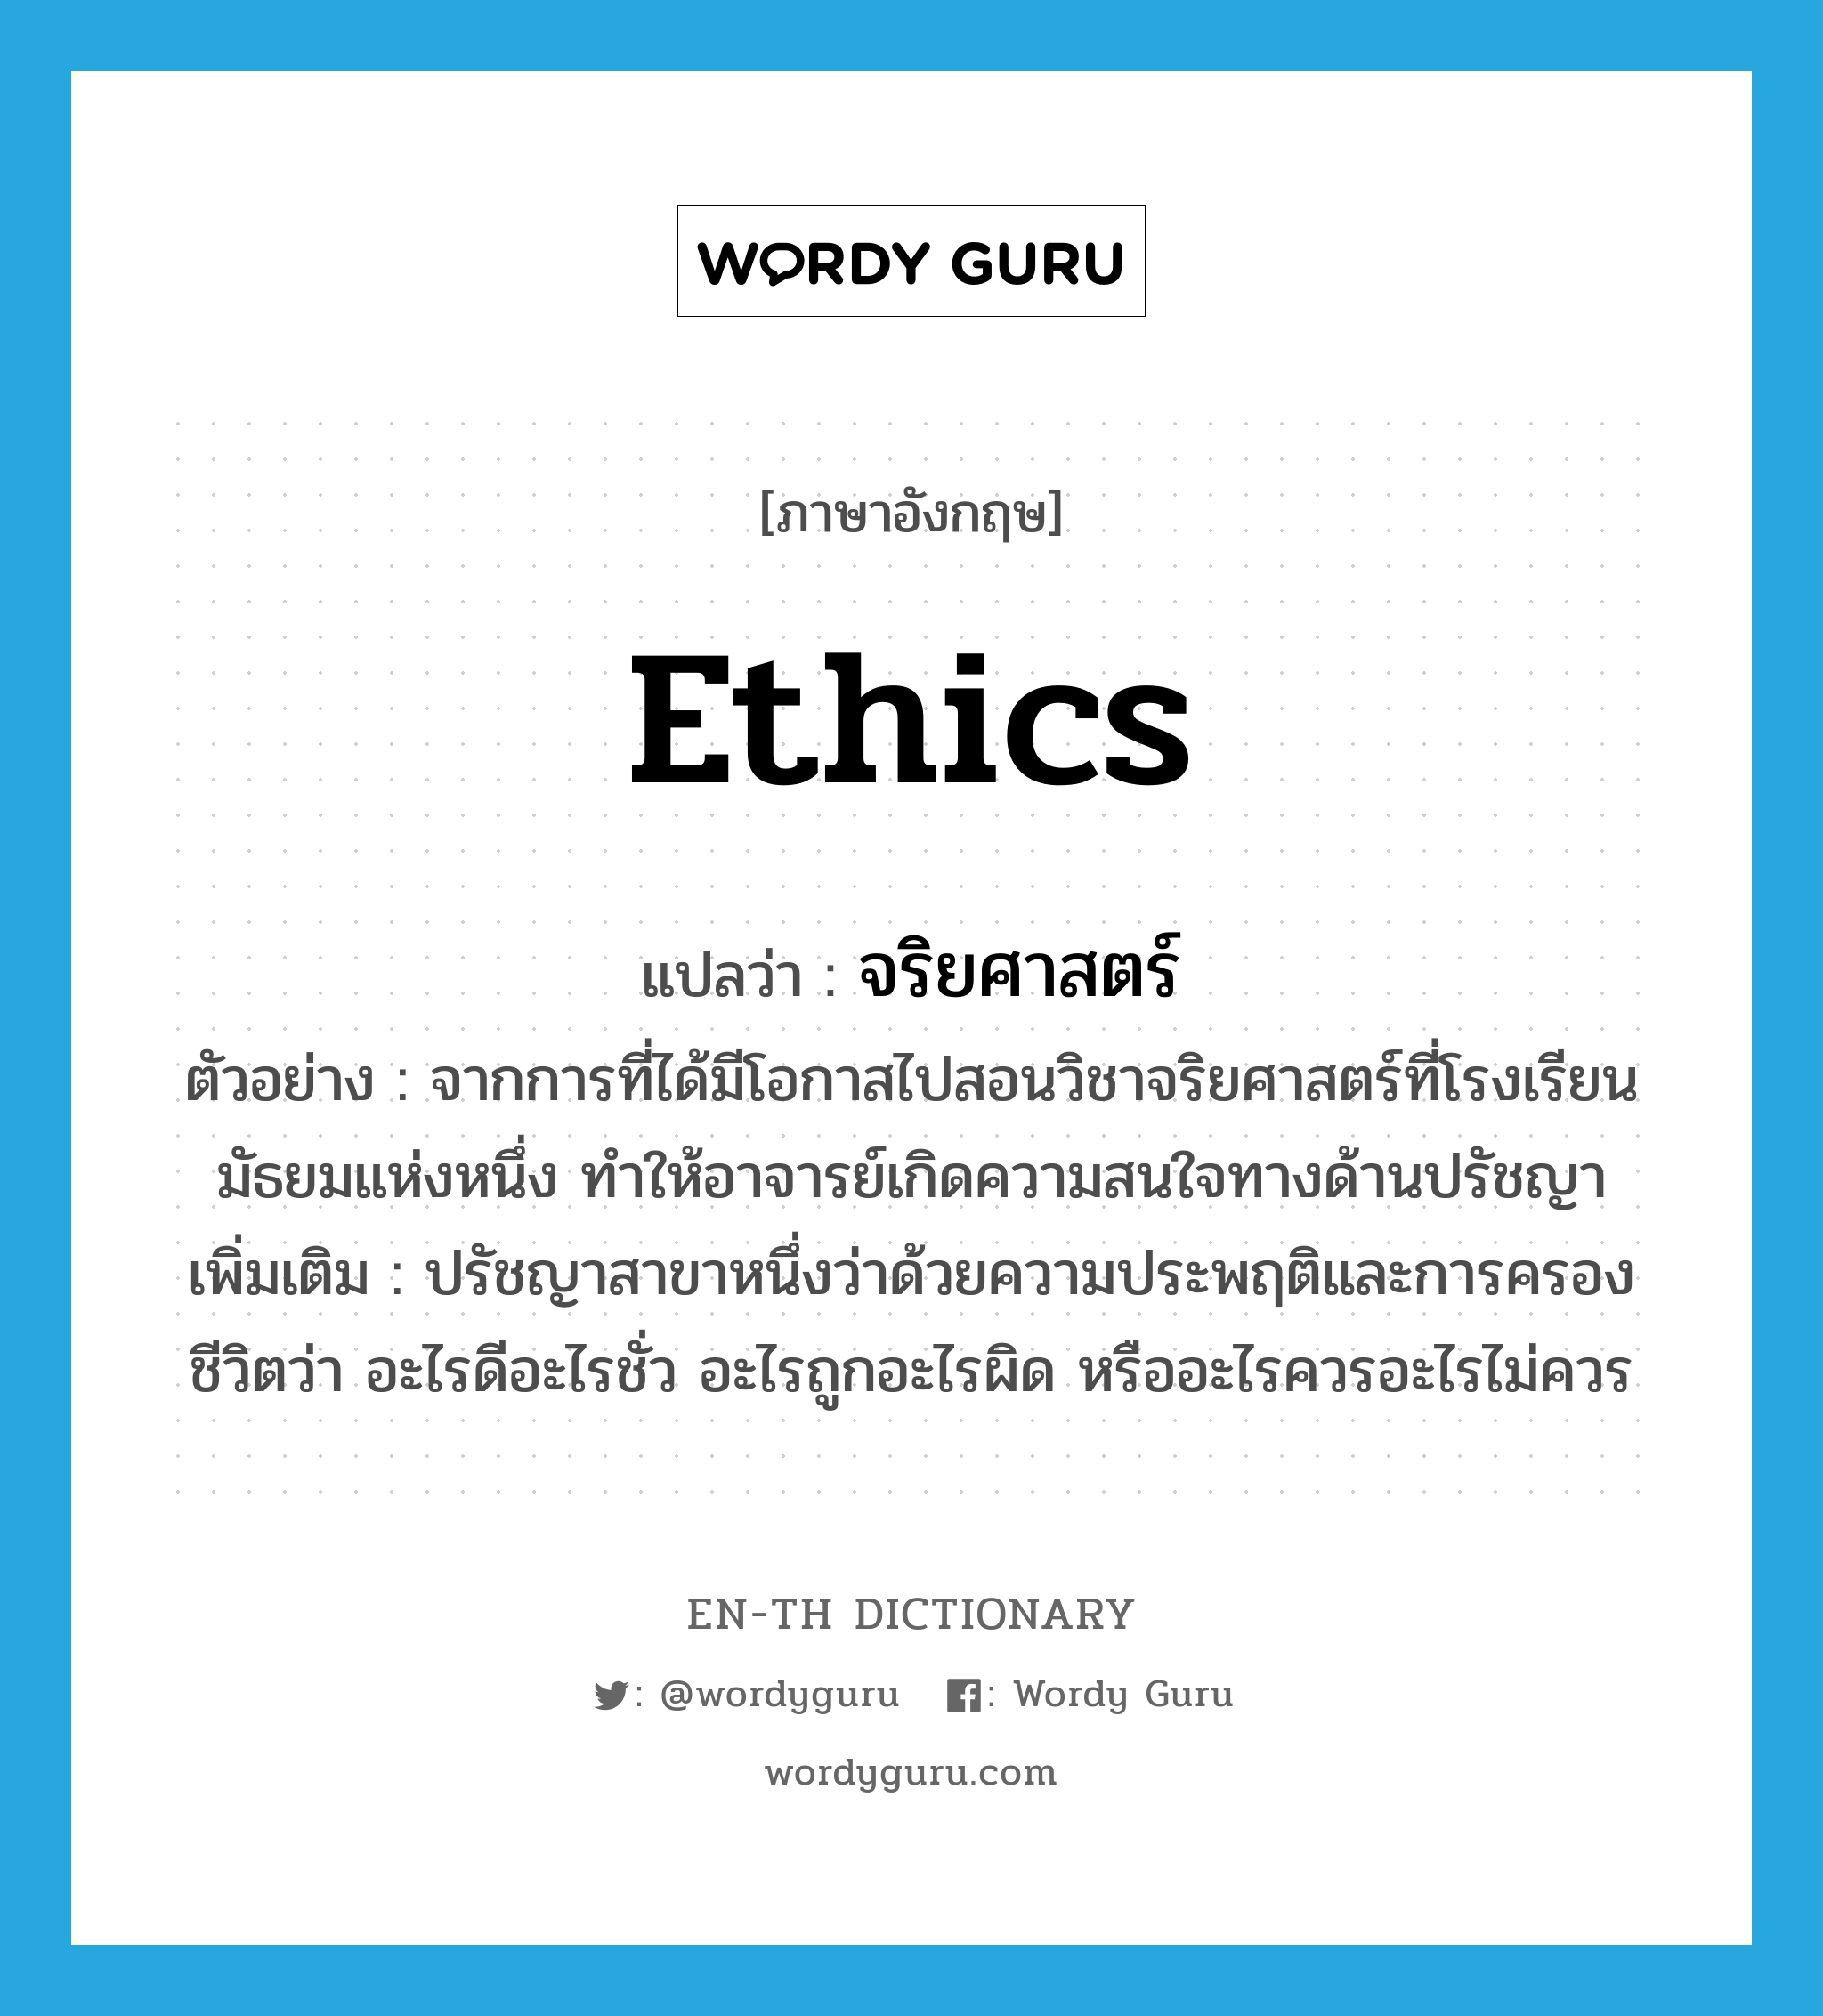 ethics แปลว่า?, คำศัพท์ภาษาอังกฤษ ethics แปลว่า จริยศาสตร์ ประเภท N ตัวอย่าง จากการที่ได้มีโอกาสไปสอนวิชาจริยศาสตร์ที่โรงเรียนมัธยมแห่งหนึ่ง ทำให้อาจารย์เกิดความสนใจทางด้านปรัชญา เพิ่มเติม ปรัชญาสาขาหนึ่งว่าด้วยความประพฤติและการครองชีวิตว่า อะไรดีอะไรชั่ว อะไรถูกอะไรผิด หรืออะไรควรอะไรไม่ควร หมวด N